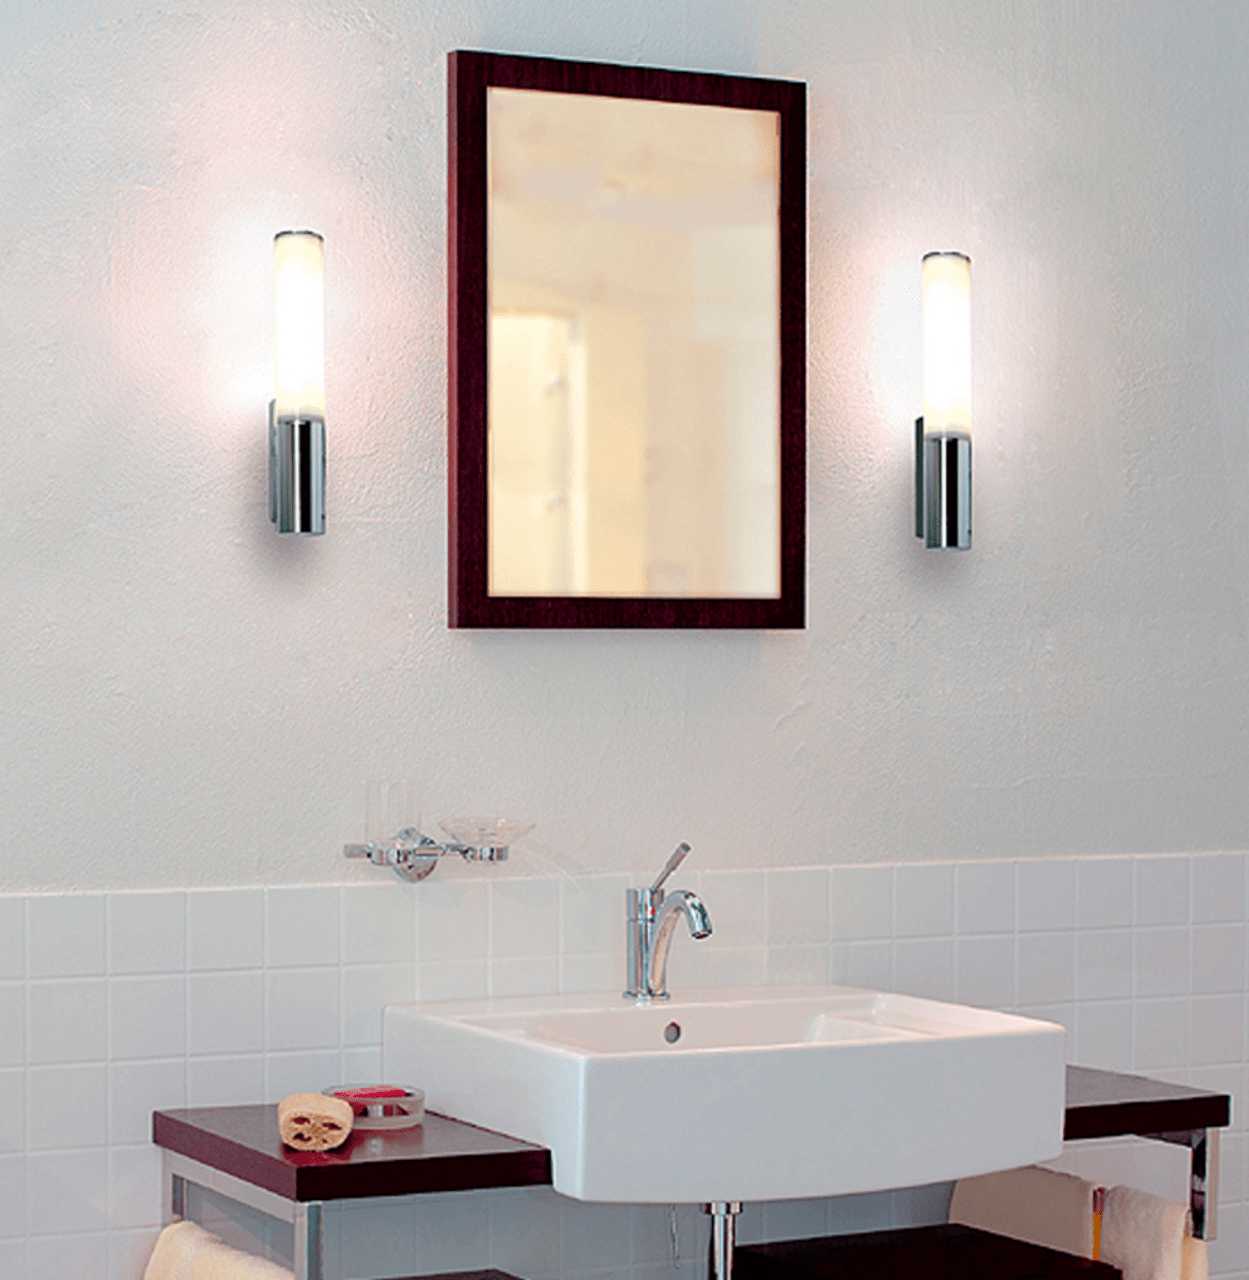 Виды подсветки для зеркала в ванной, варианты установки и подключения 39 - ДиванеТТо